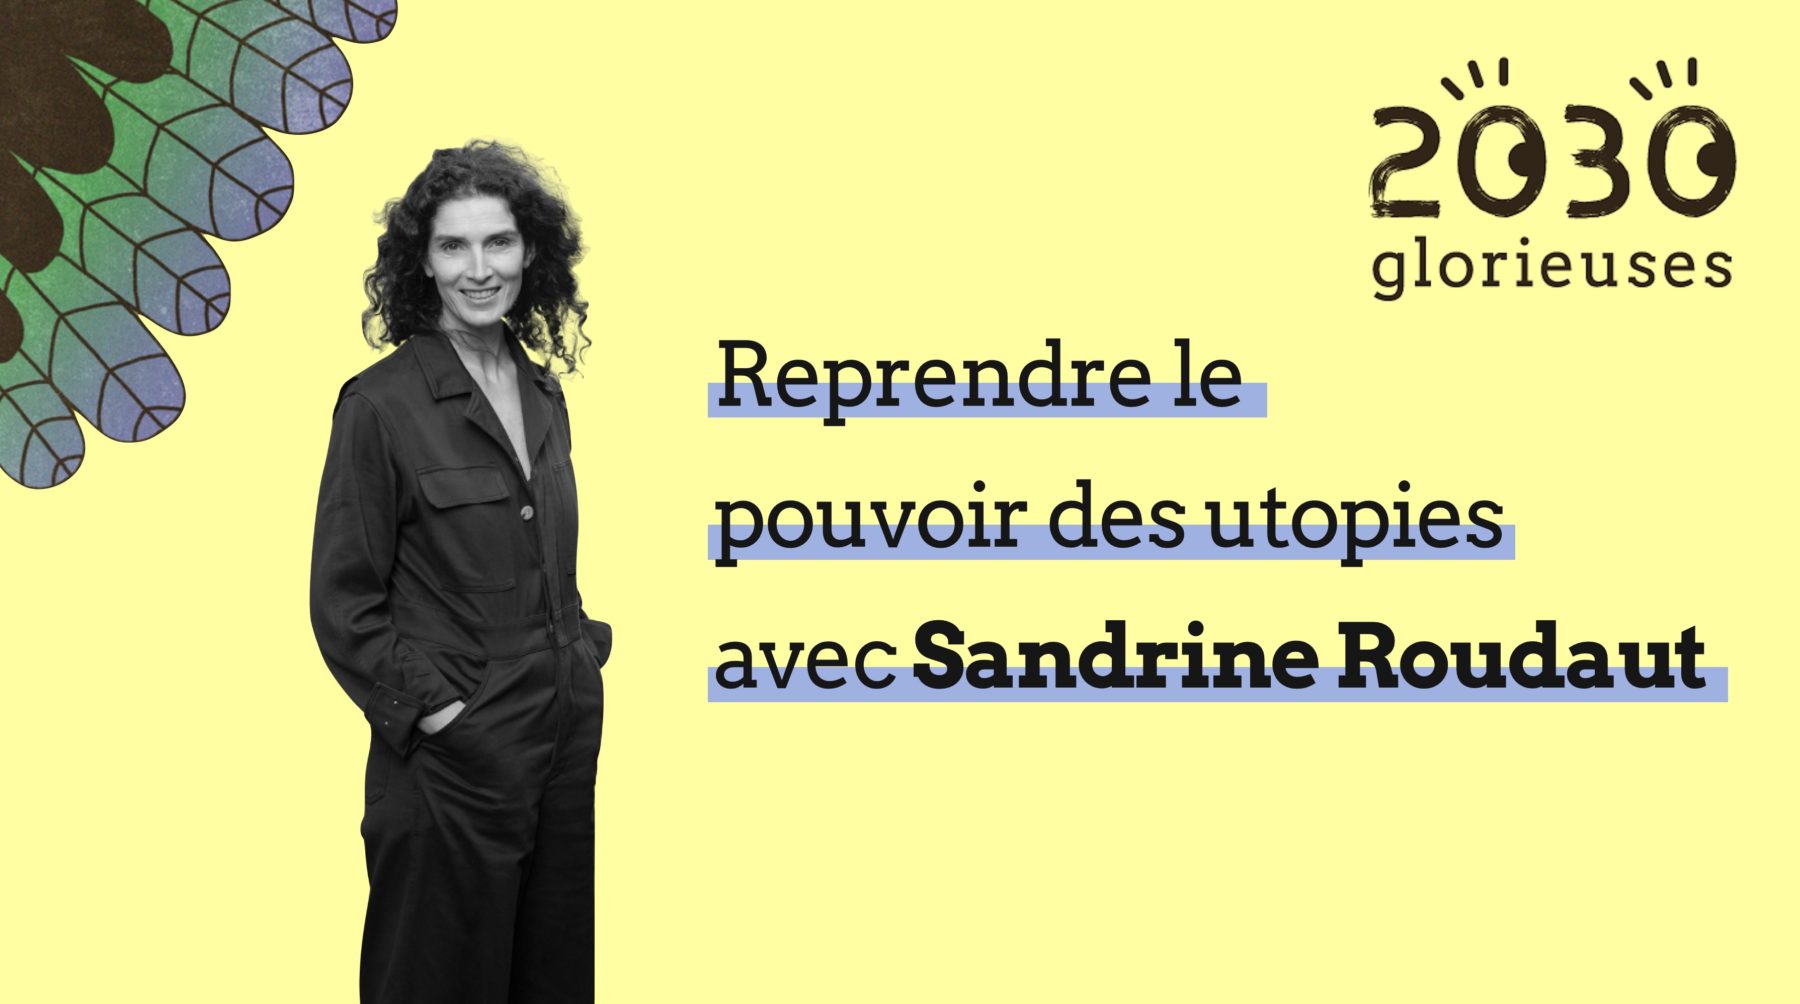 Le pouvoir des utopies avec Sandrine Roudaut